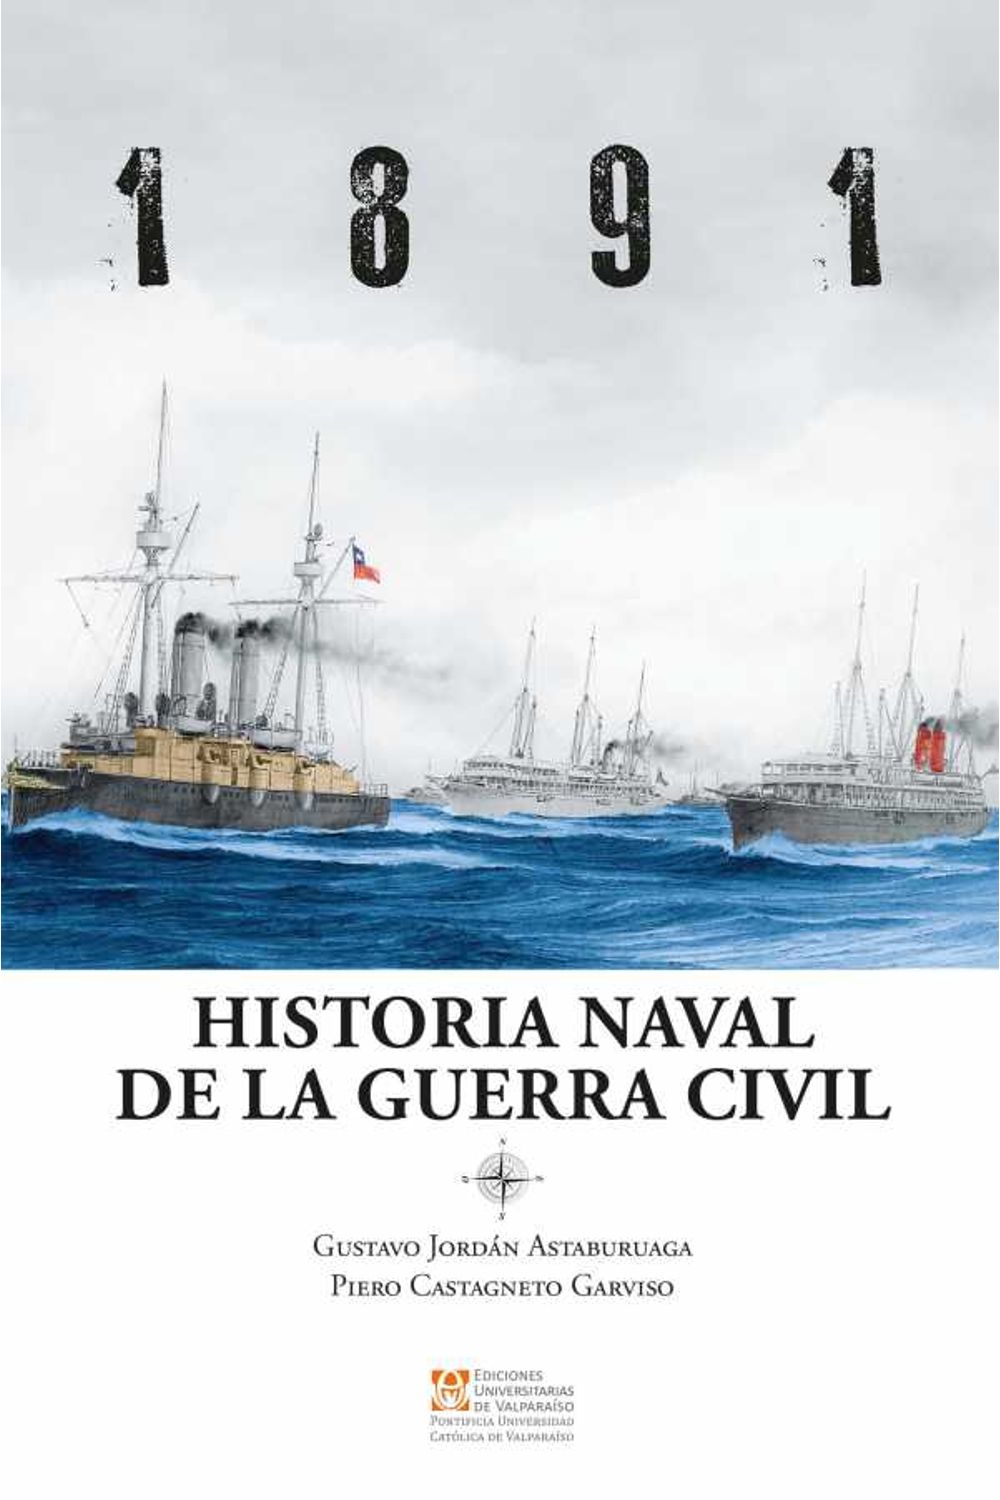 bw-1891-historia-naval-de-la-guerra-civil-ediciones-universitarias-de-valparaso-9789561709362